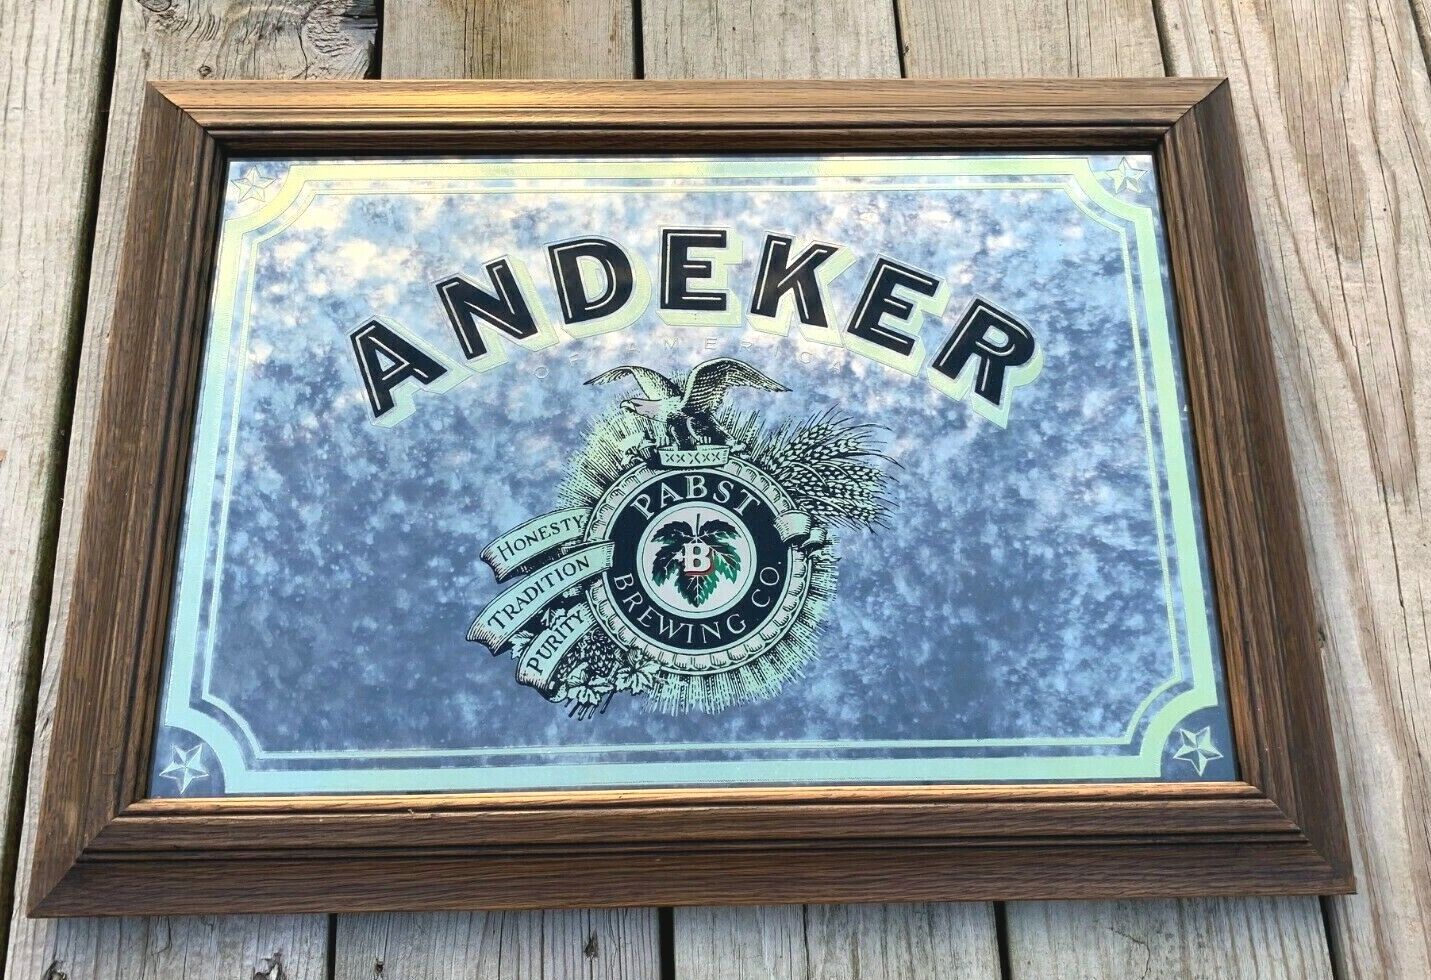 Vintage Pabst  Andeker Beer Bar Advertising Mirror Sign 1982